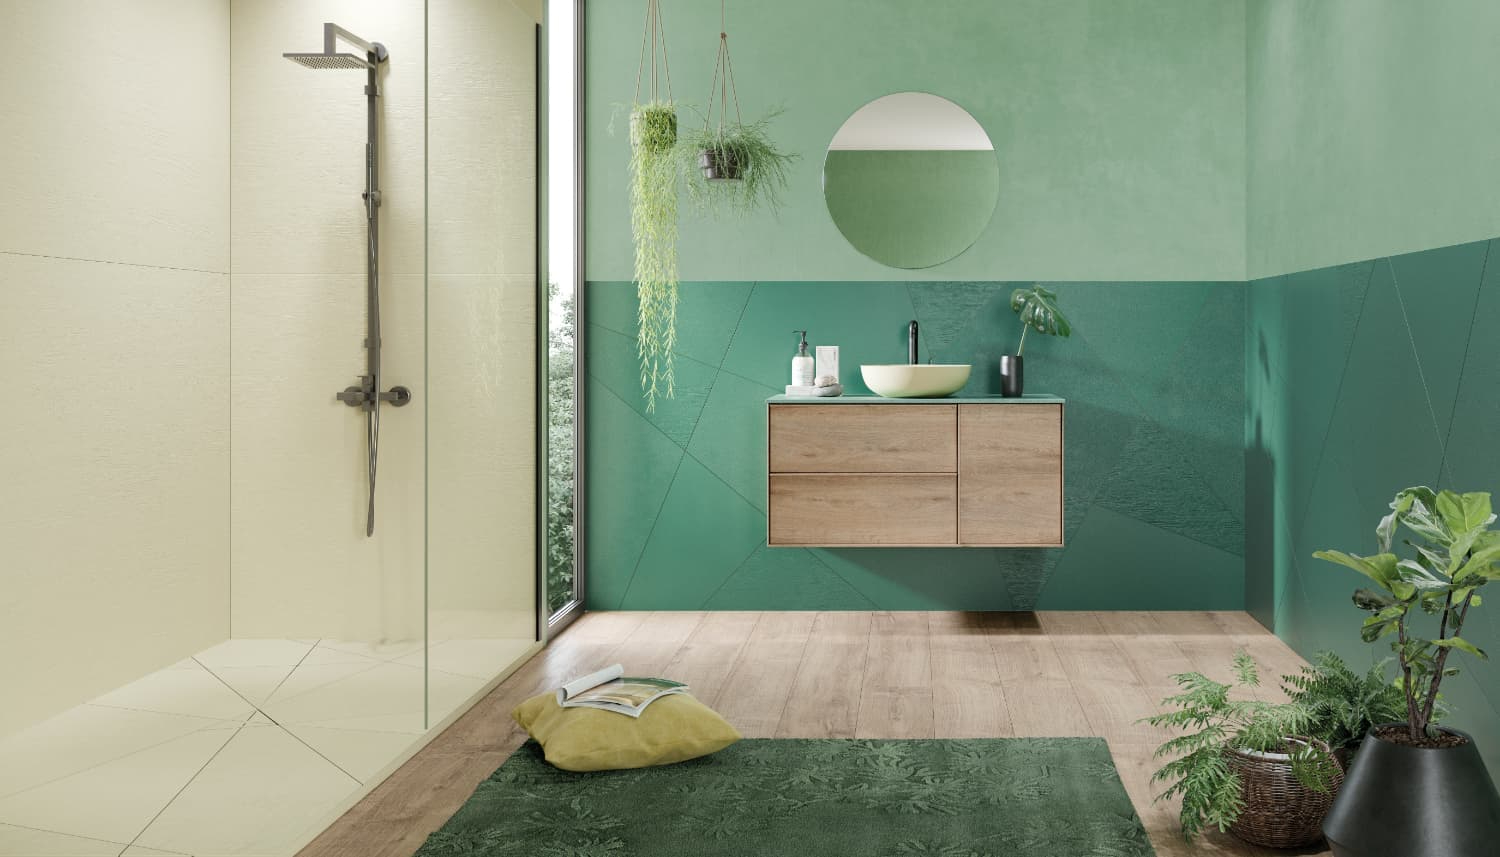 Petite pièce de la maison, la salle de bain se pare de couleurs avec le carrelage mural.